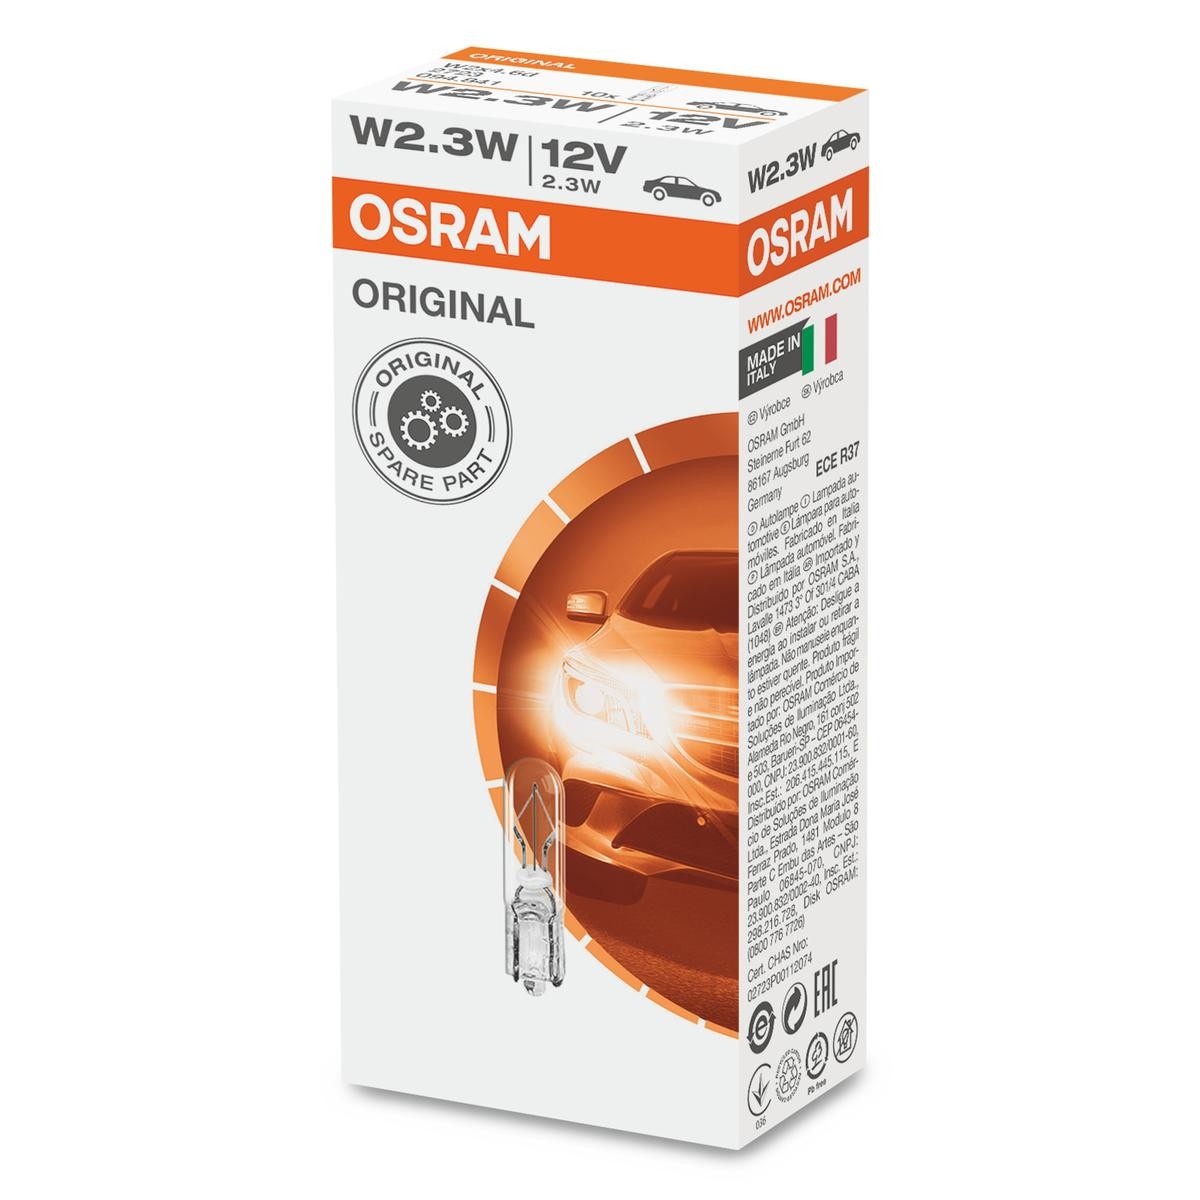 W23W OSRAM ORIGINAL 12V 2,3W, W2,3W, W2x4,6d Bulb 2723 cheap